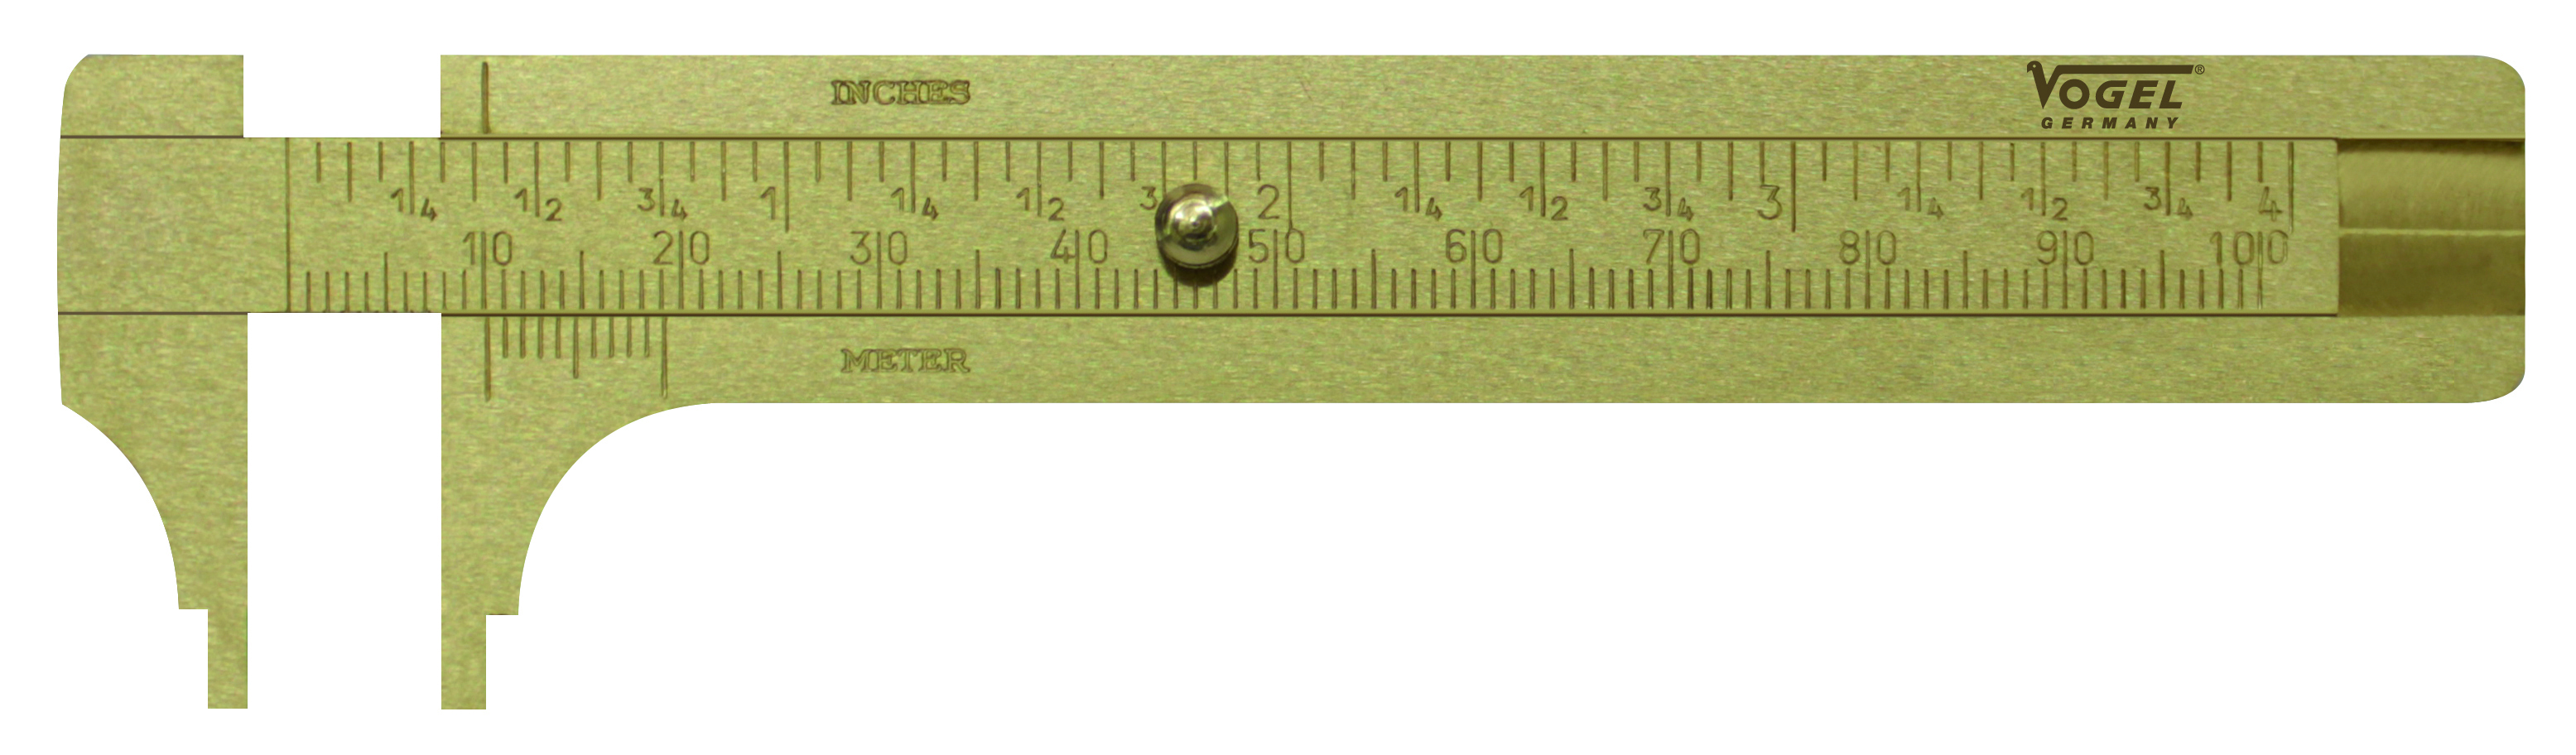 Vogel Messing-Reifenprofil-Tiefenmaß, Messbereich 0 - 30 mm